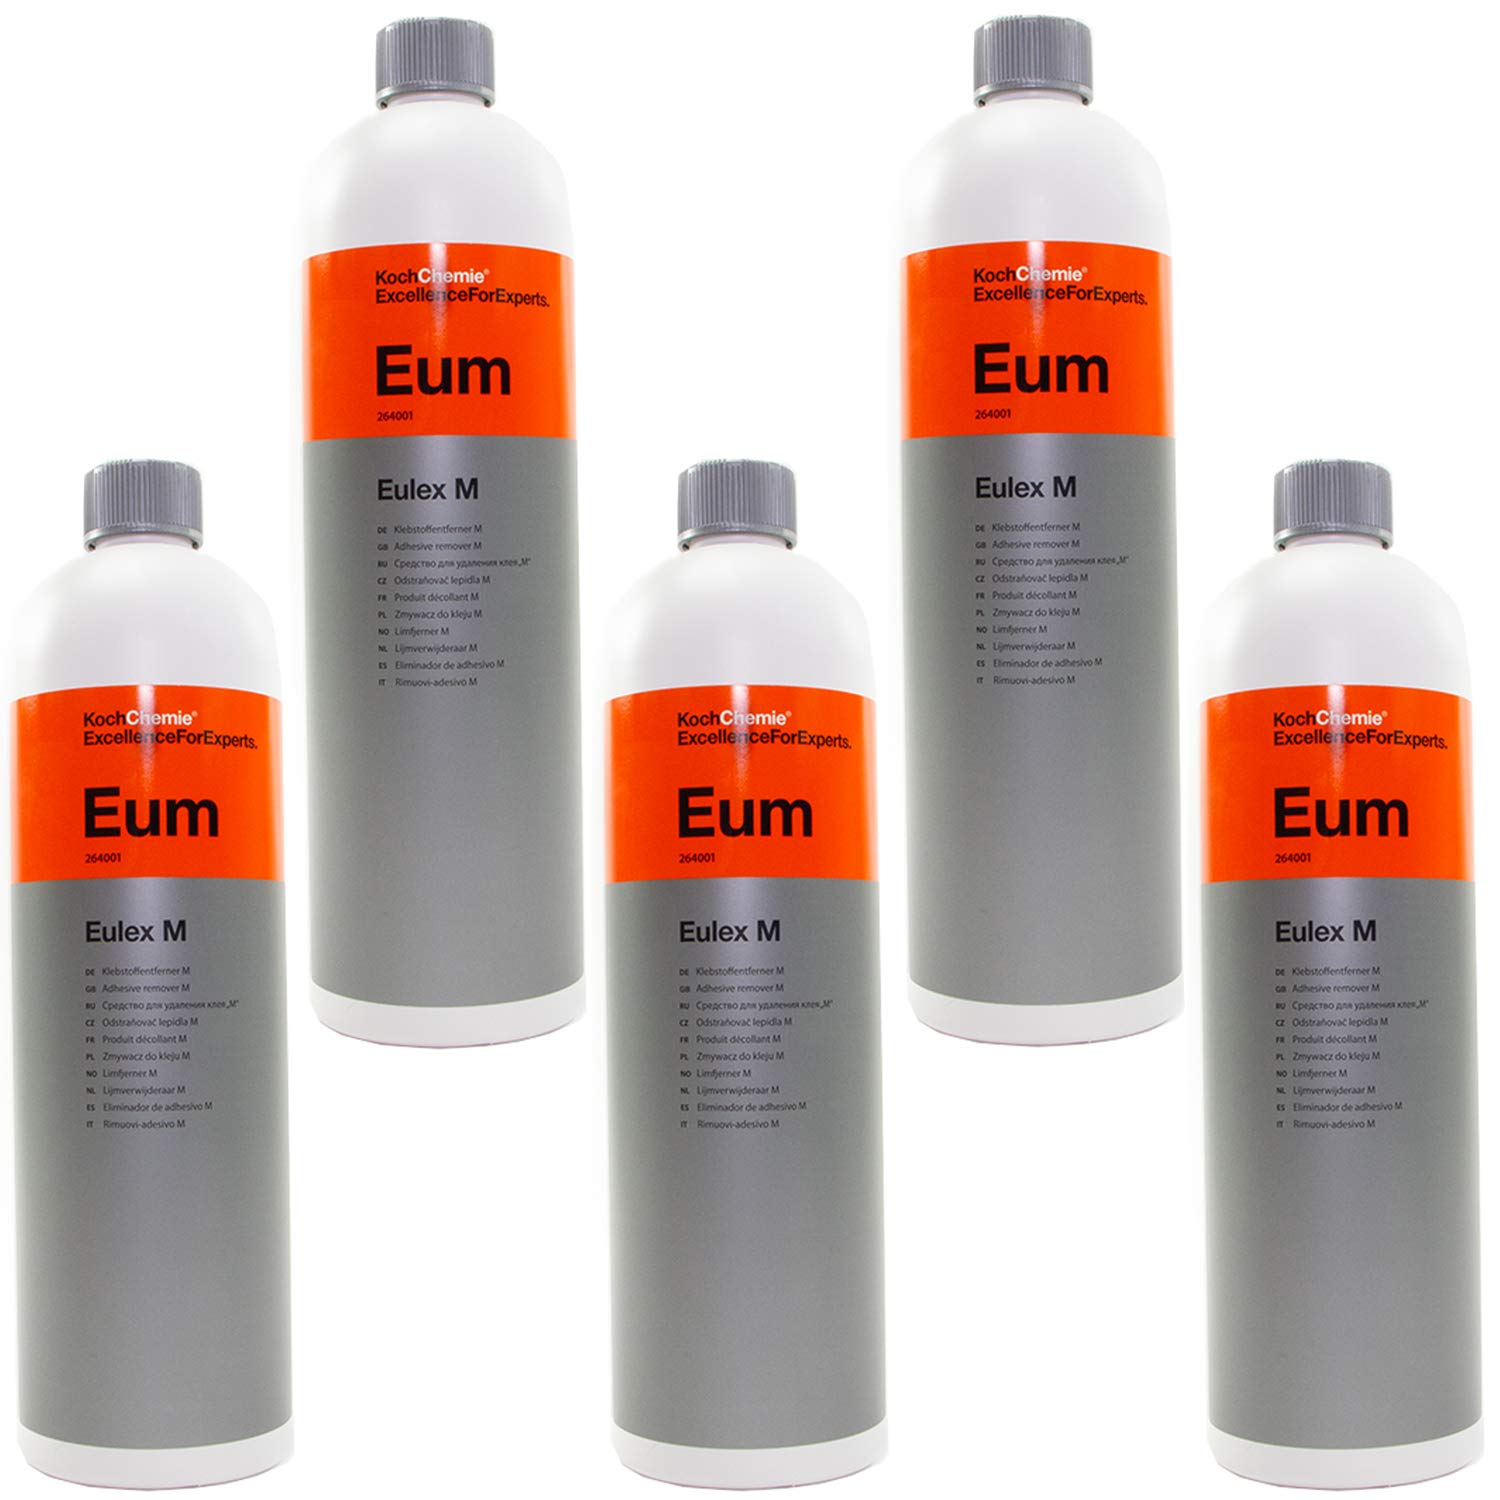 Klebstoffentferner Klebstoff Entferner Eulex M Eum Koch Chemie 5 Liter von MVH Bockauf